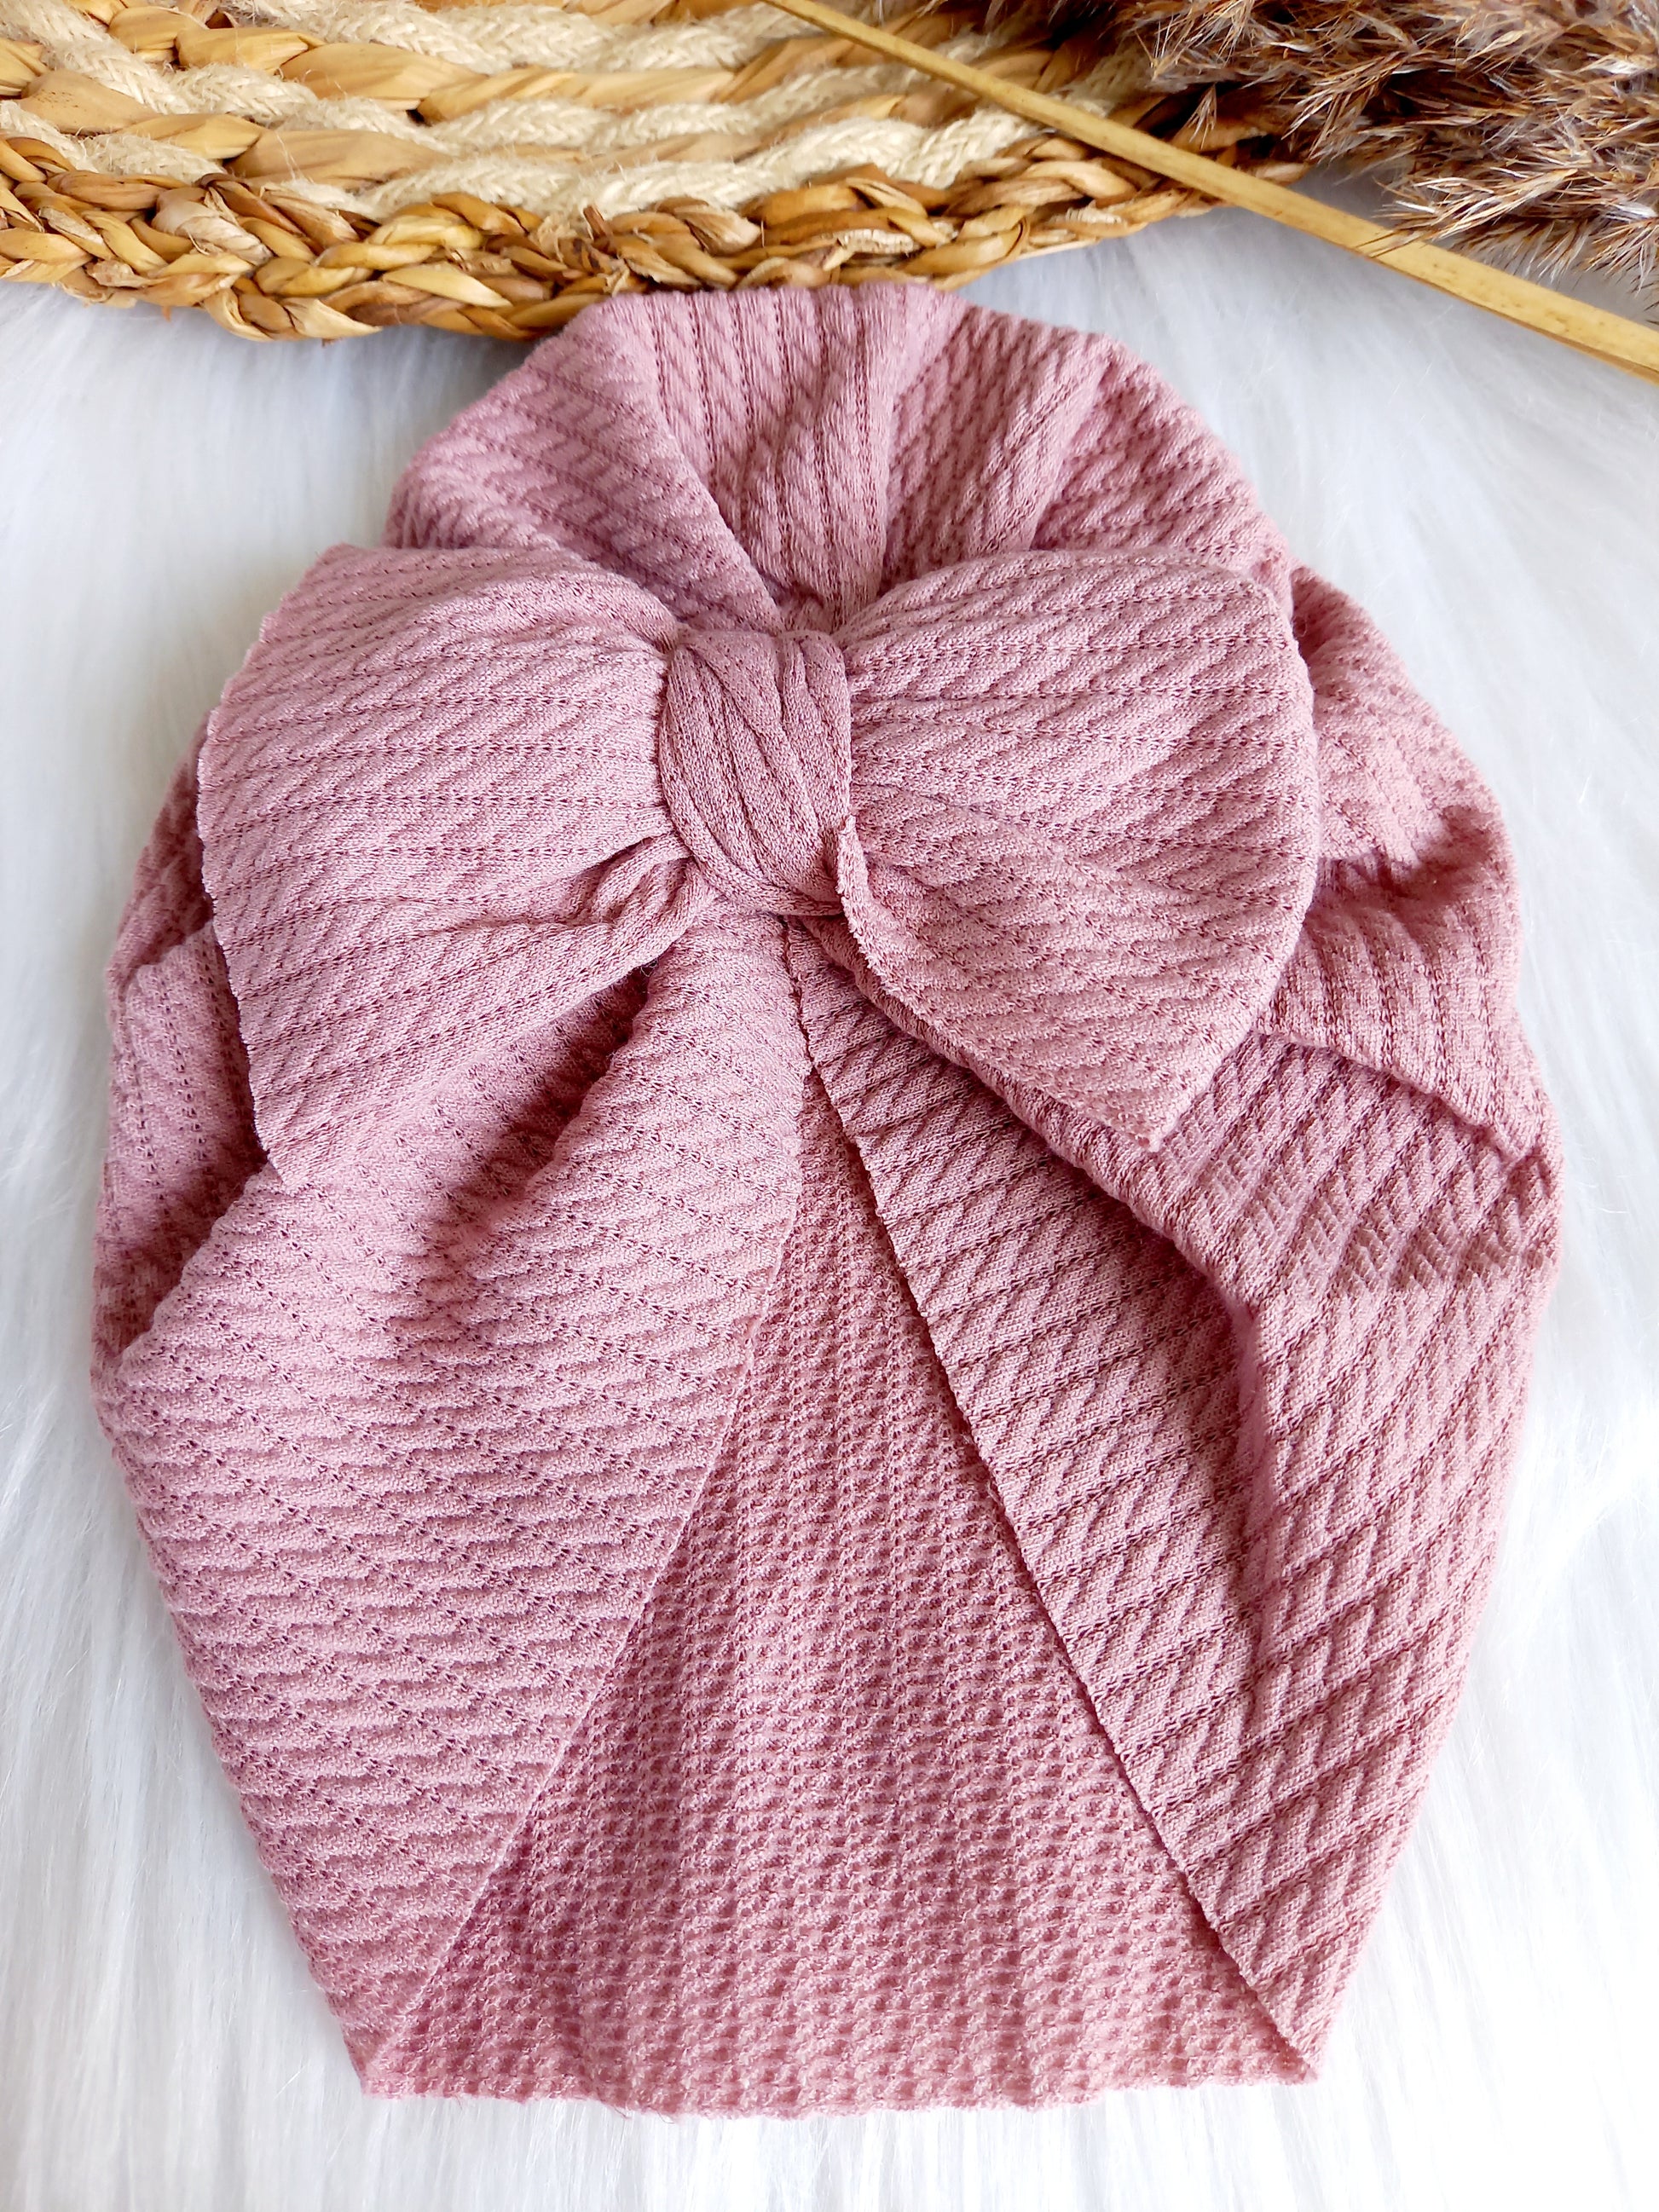 Deze leuke turbans zijn echt een musthave voor je kleintje. Ze zijn verkrijgbaar in verschillende kleuren zodat je het kan matchen bij het outfit van je kleintje. turban baby esmee oudroze